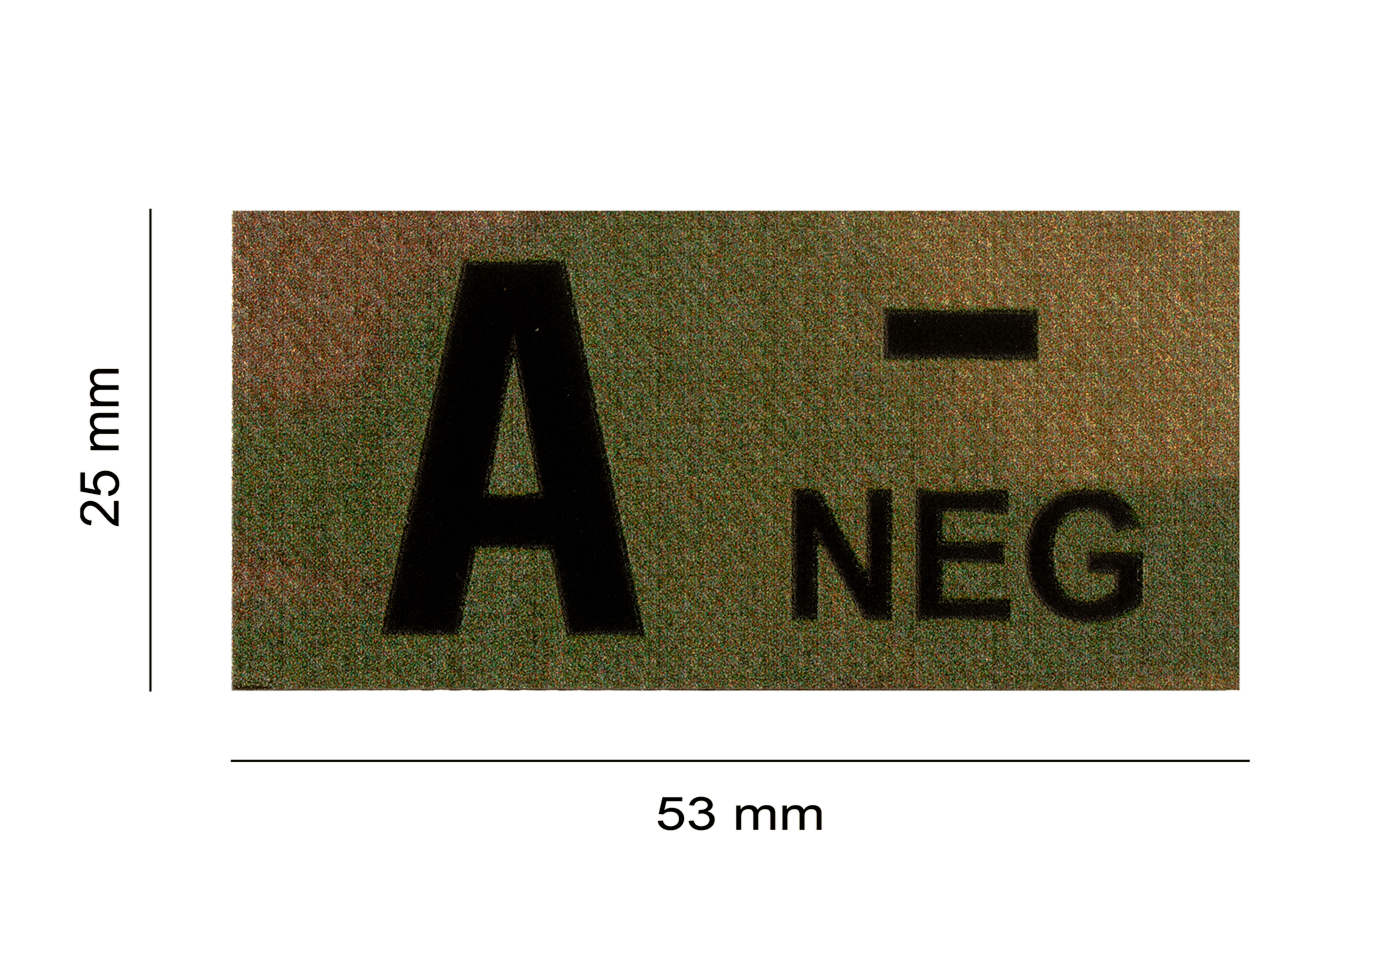 A Neg IR Patch Multicam (Clawgear)